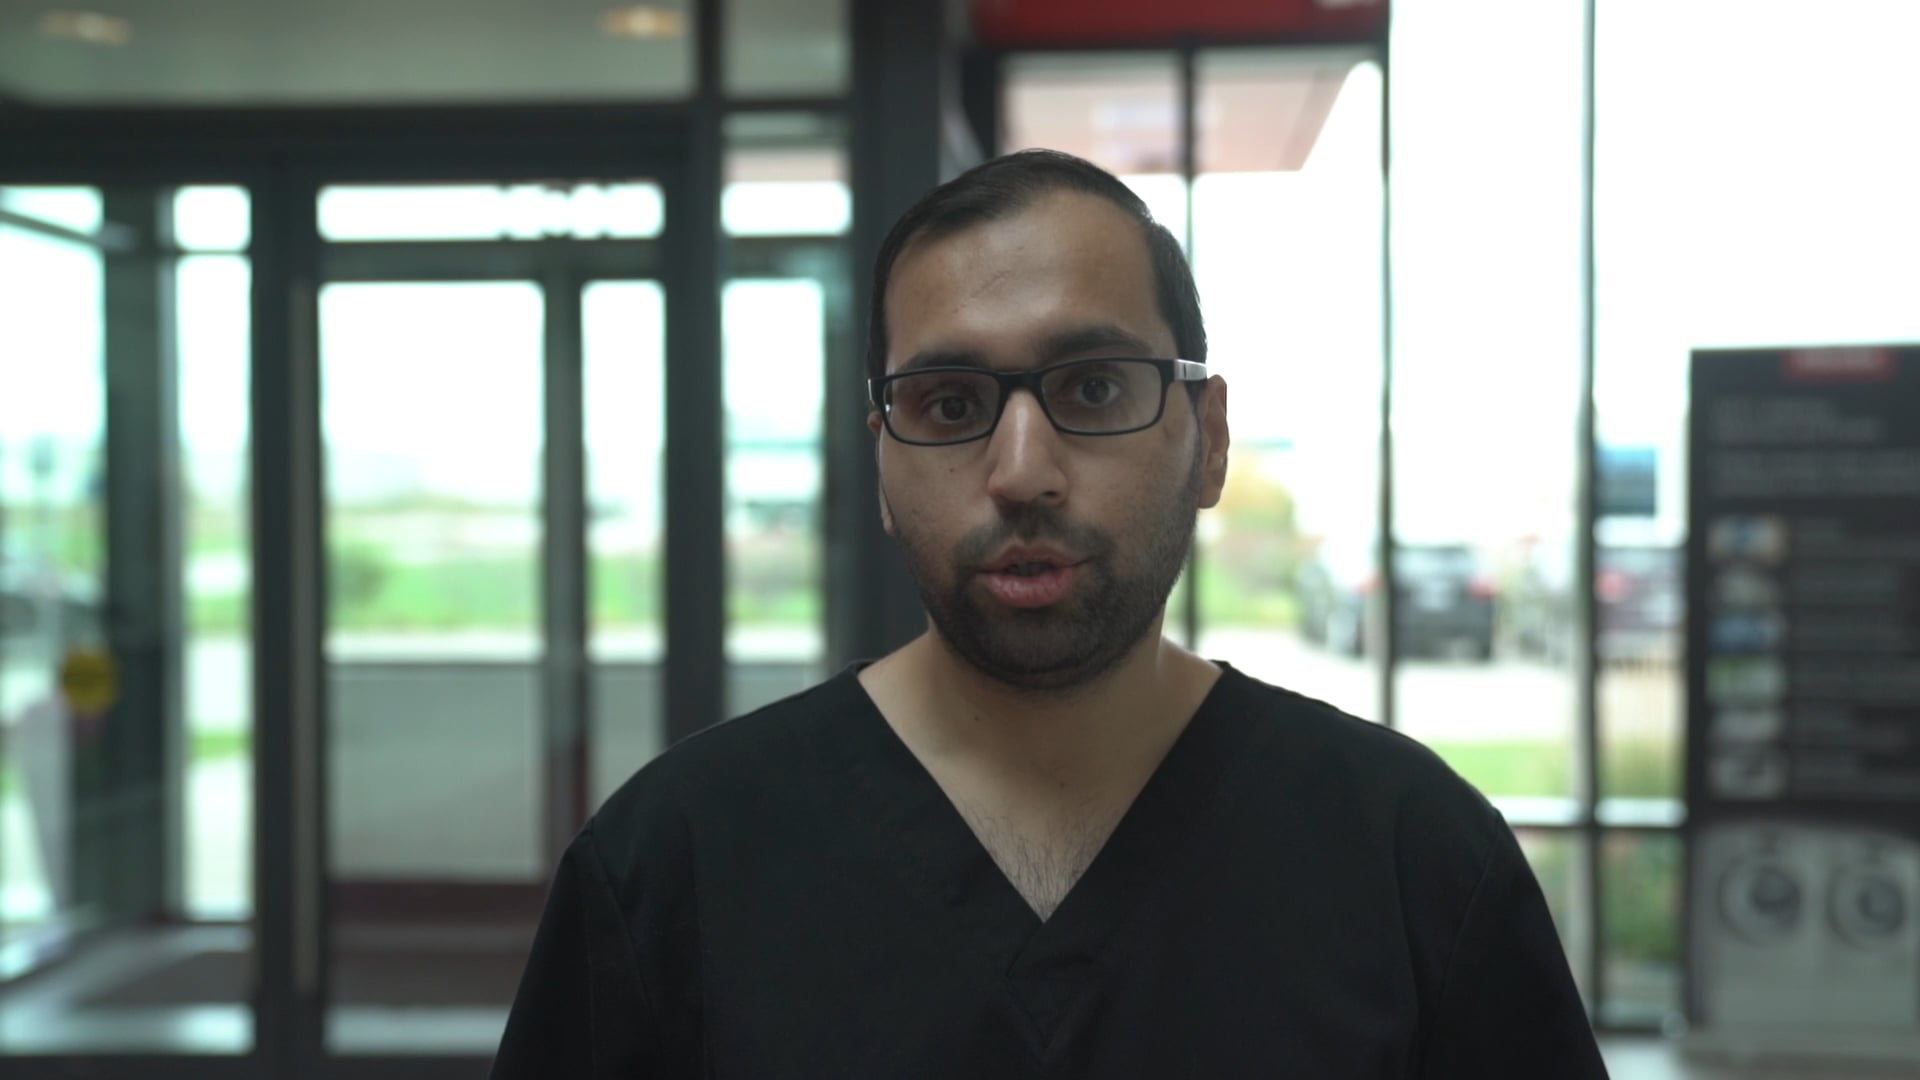 Canadian Implant Dentistry Network - Atyub Ahmad